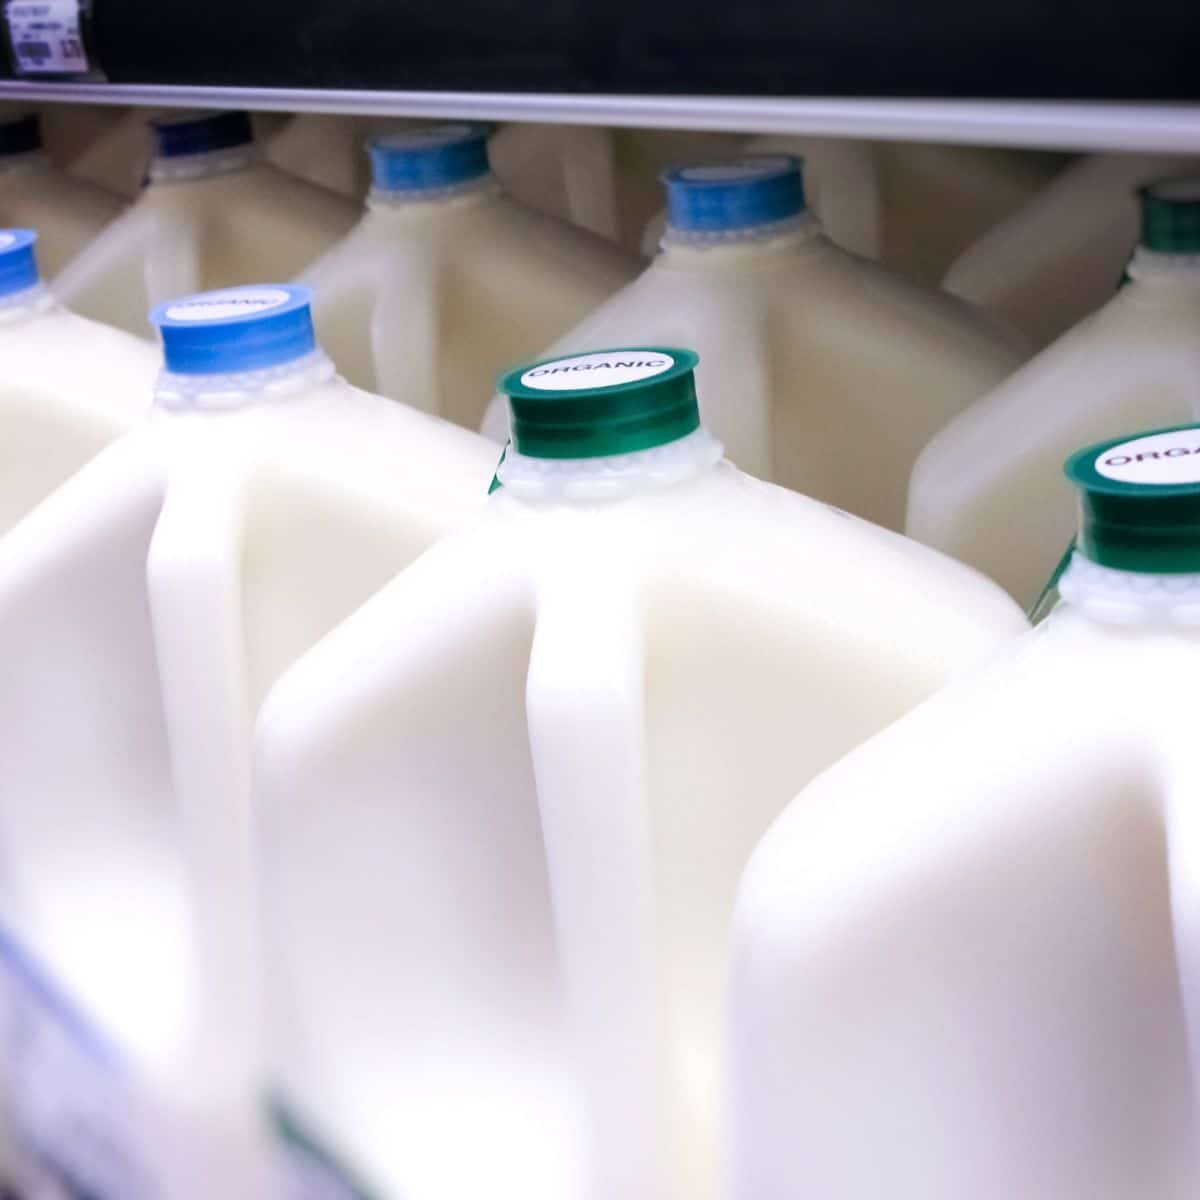 Immagine quadrata che mostra i litri di latte.